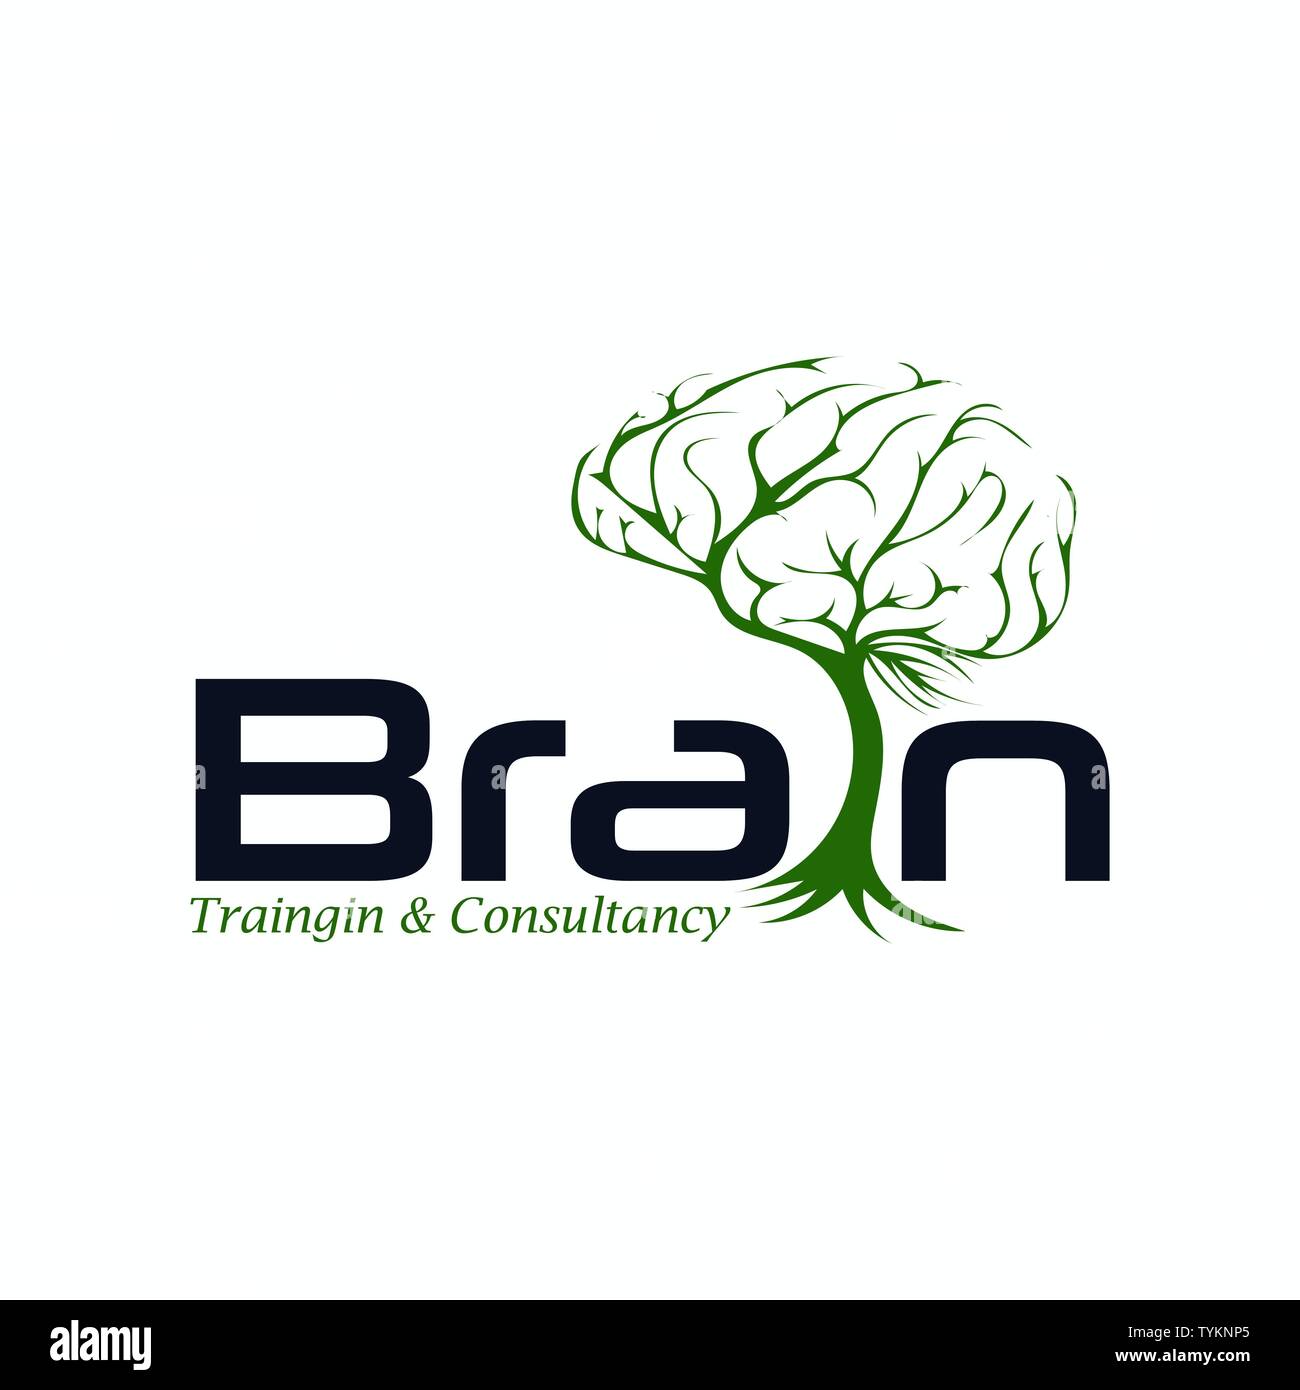 Menschliche Gehirn mit Blatt logo Vorlage Stock Vektor